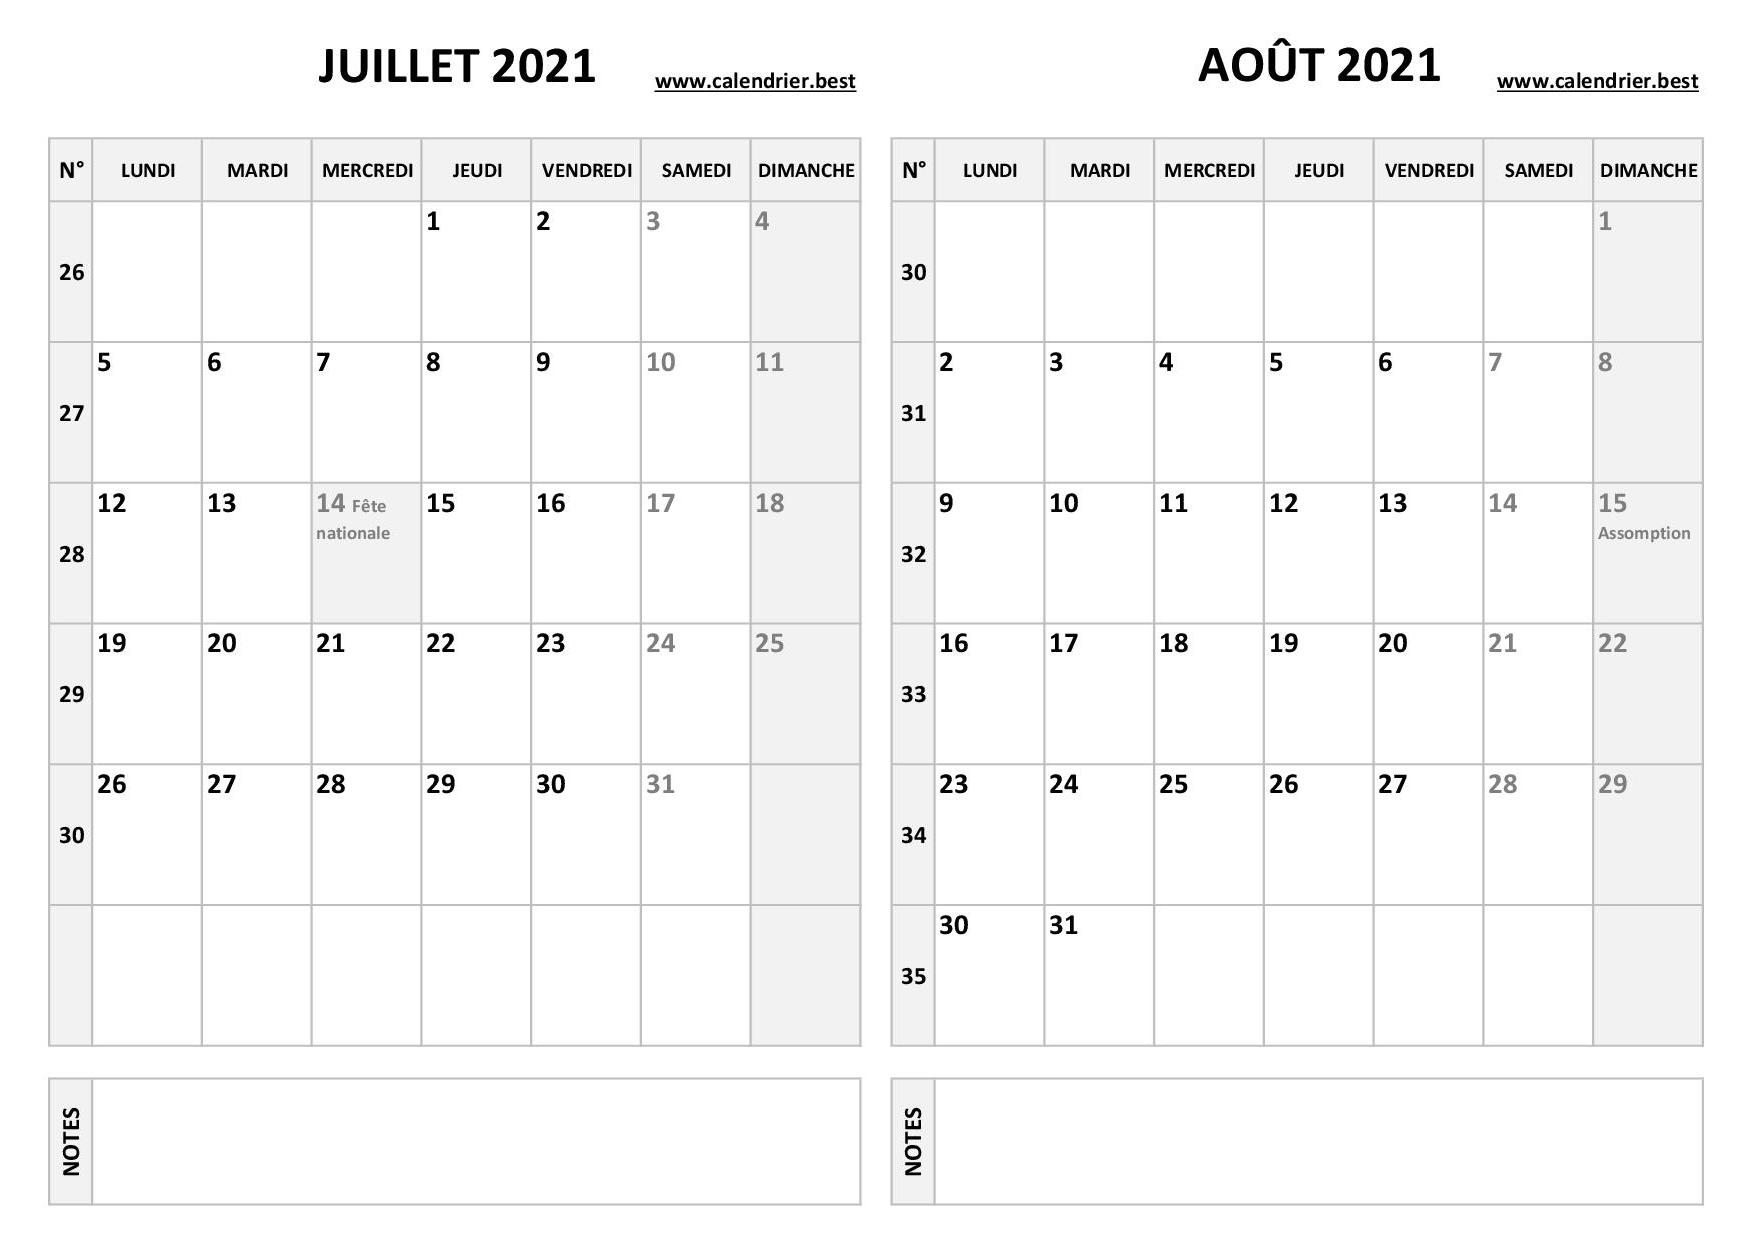 Calendrier juillet et août 2021 à imprimer -Calendrier.best